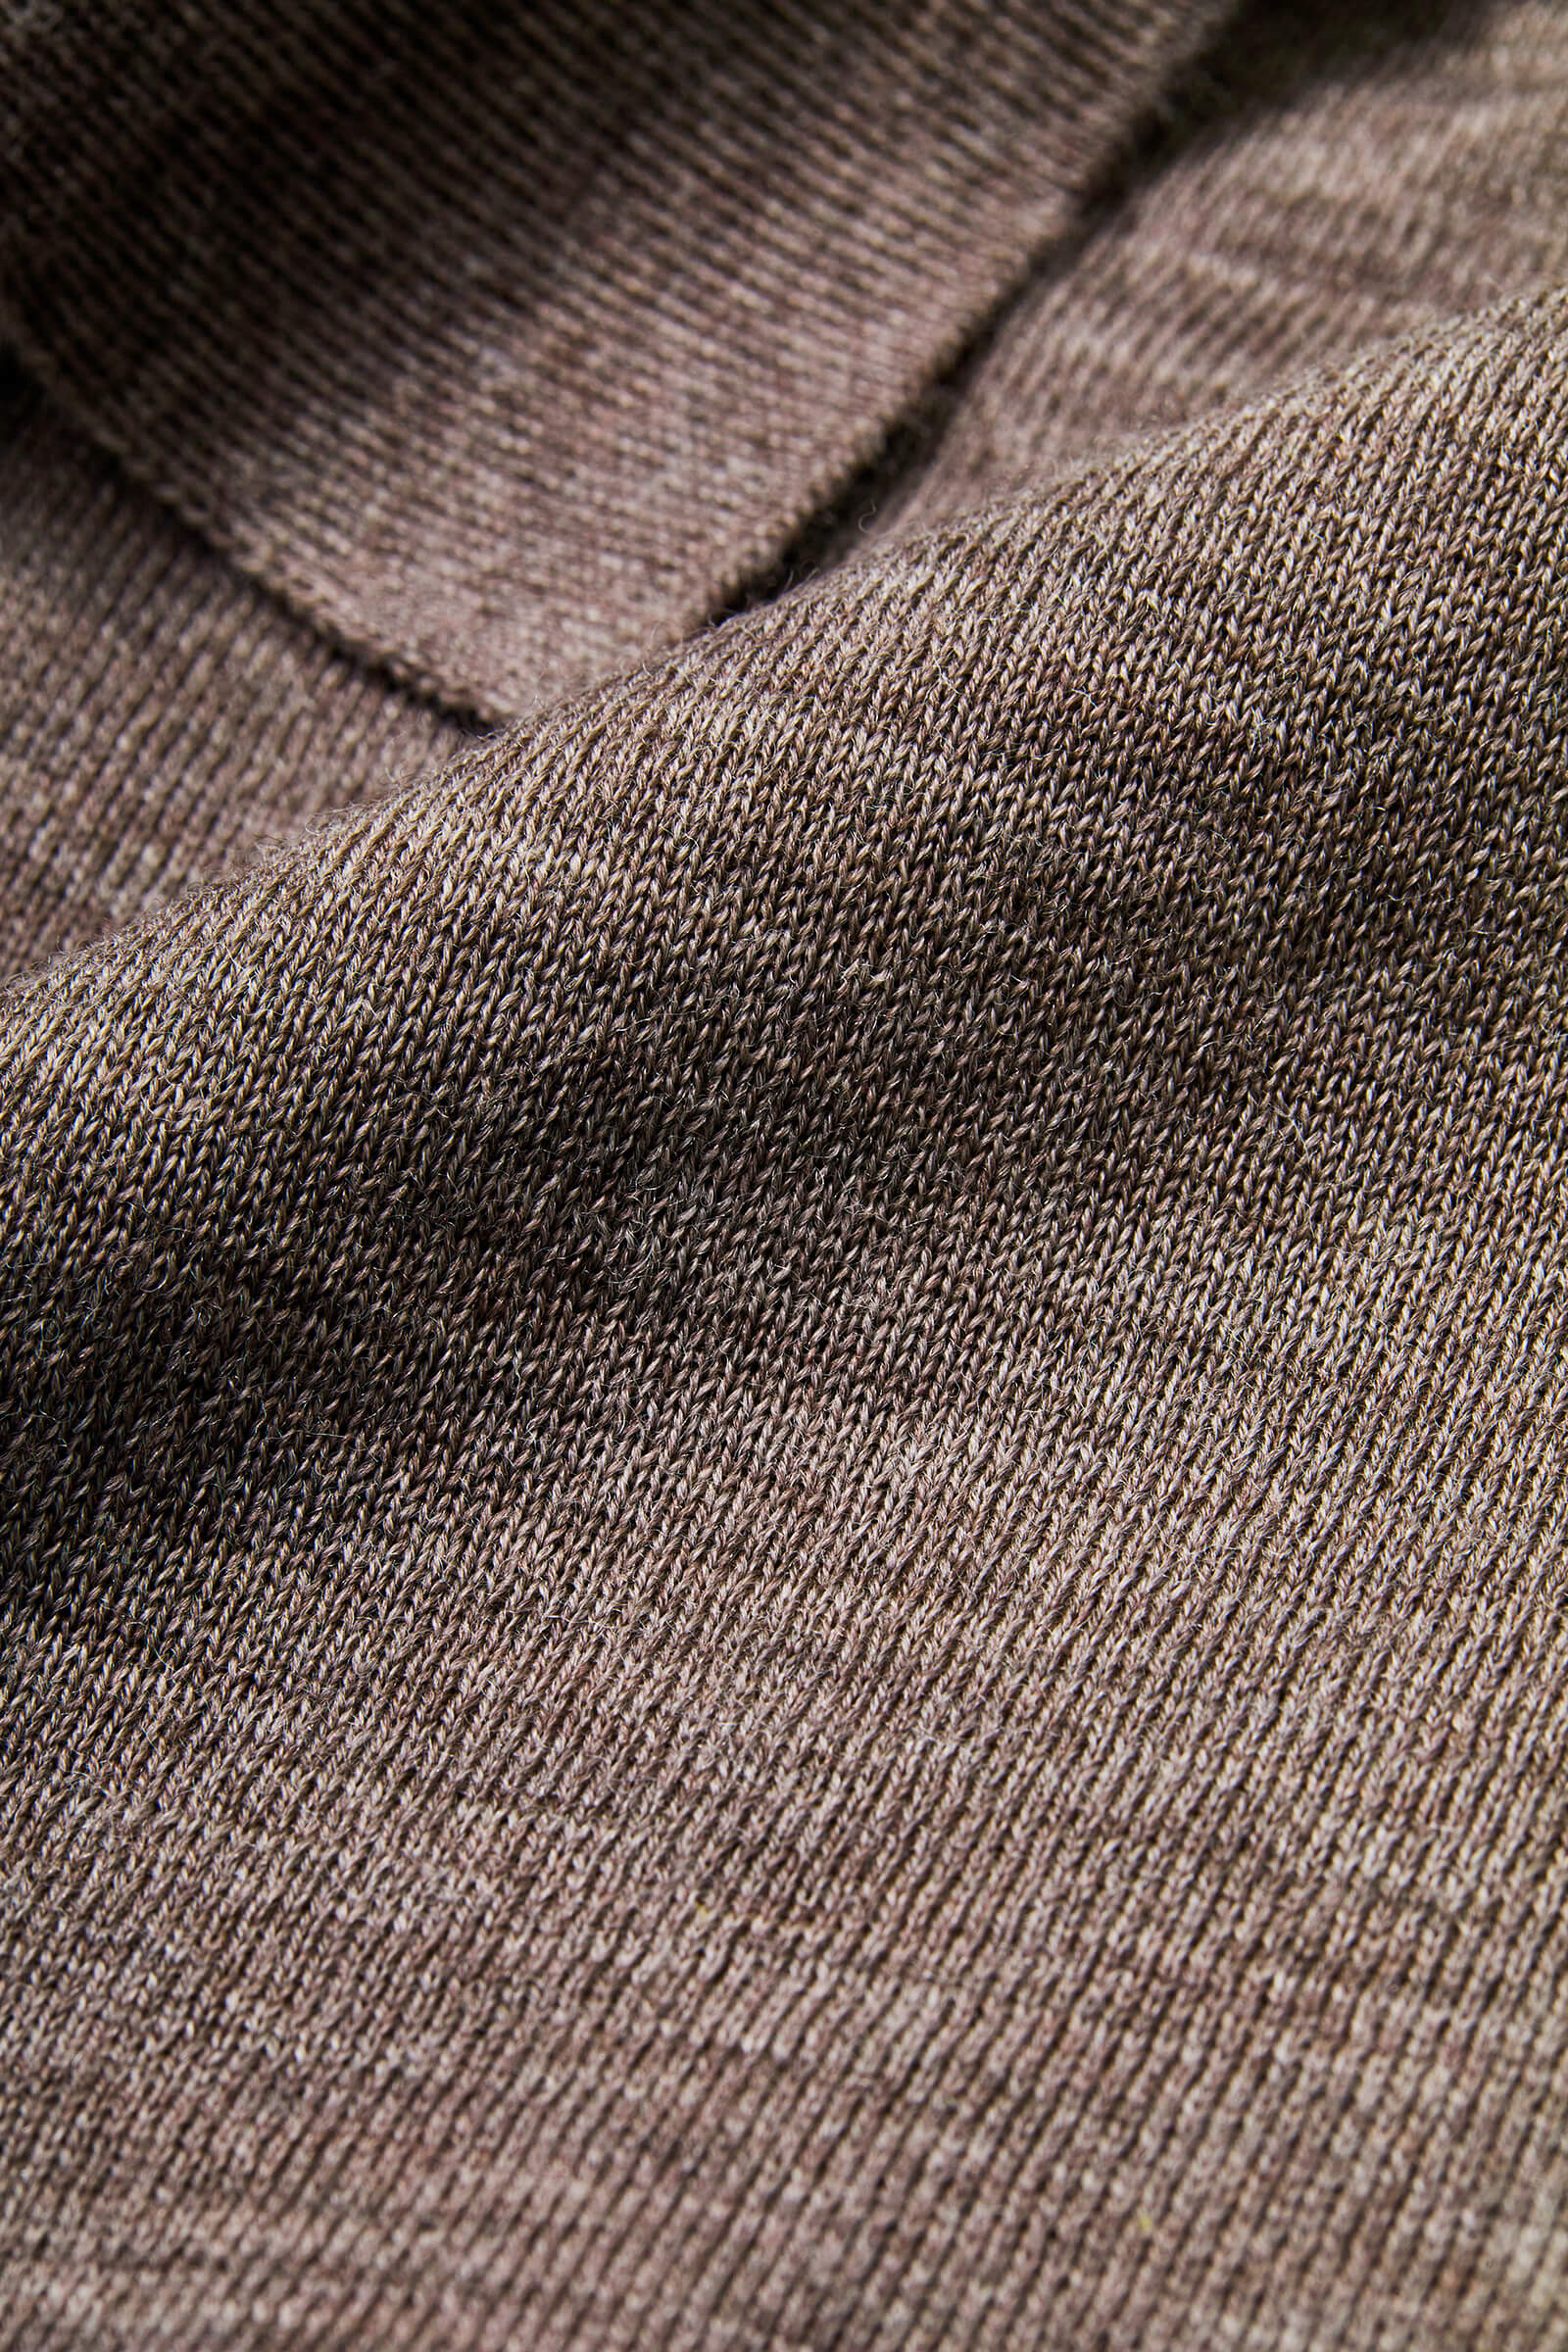 ウール100%糸を、16ゲージの天竺編みにした生地を使用。天然繊維として知られるウールには、吸放湿性、抗菌性、伸縮性など魅力的な機能があります